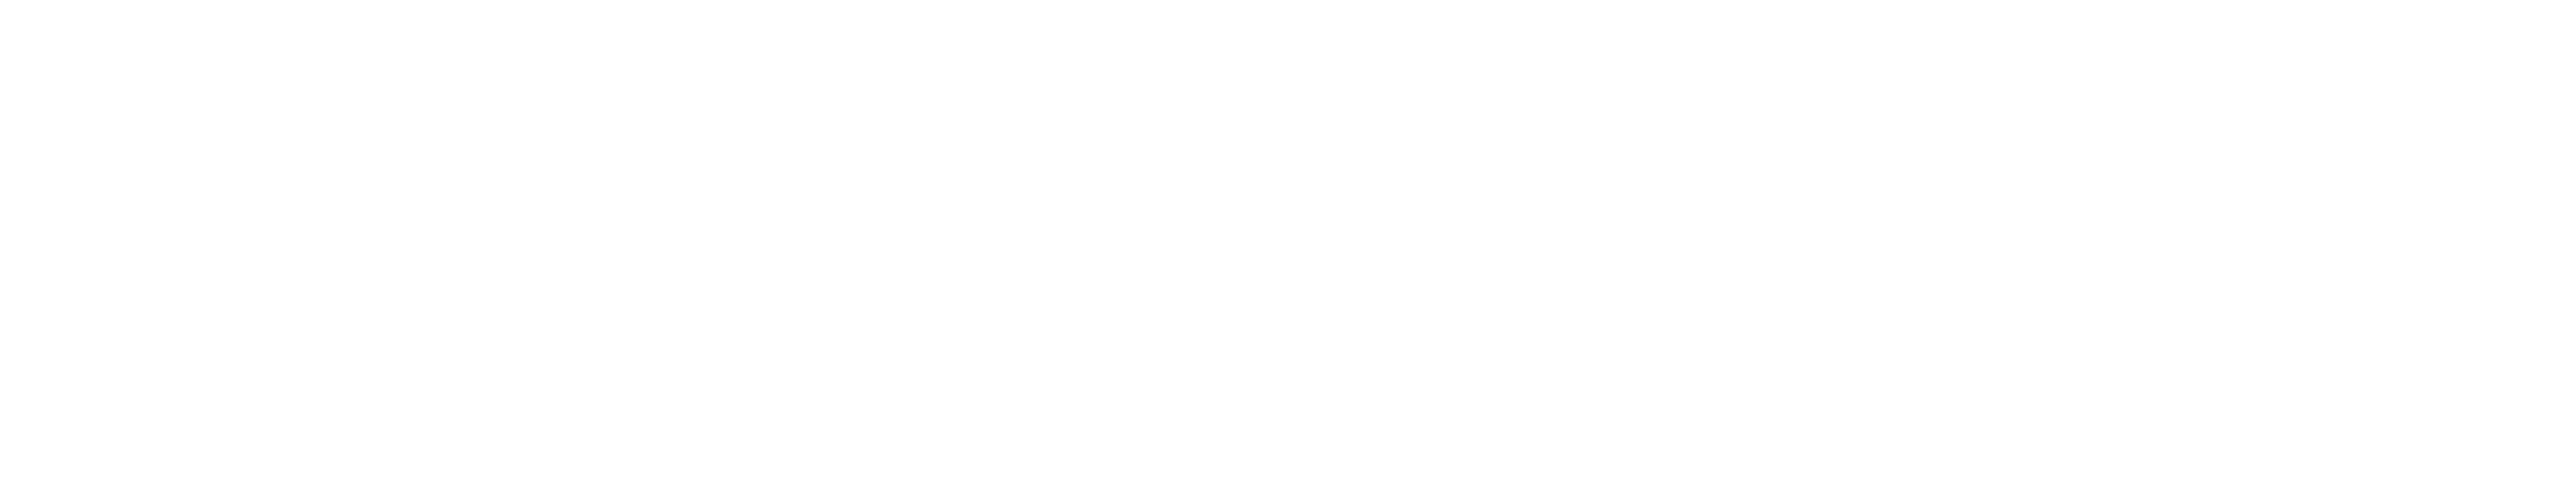 Customer Vehicle management Logo Logo 01